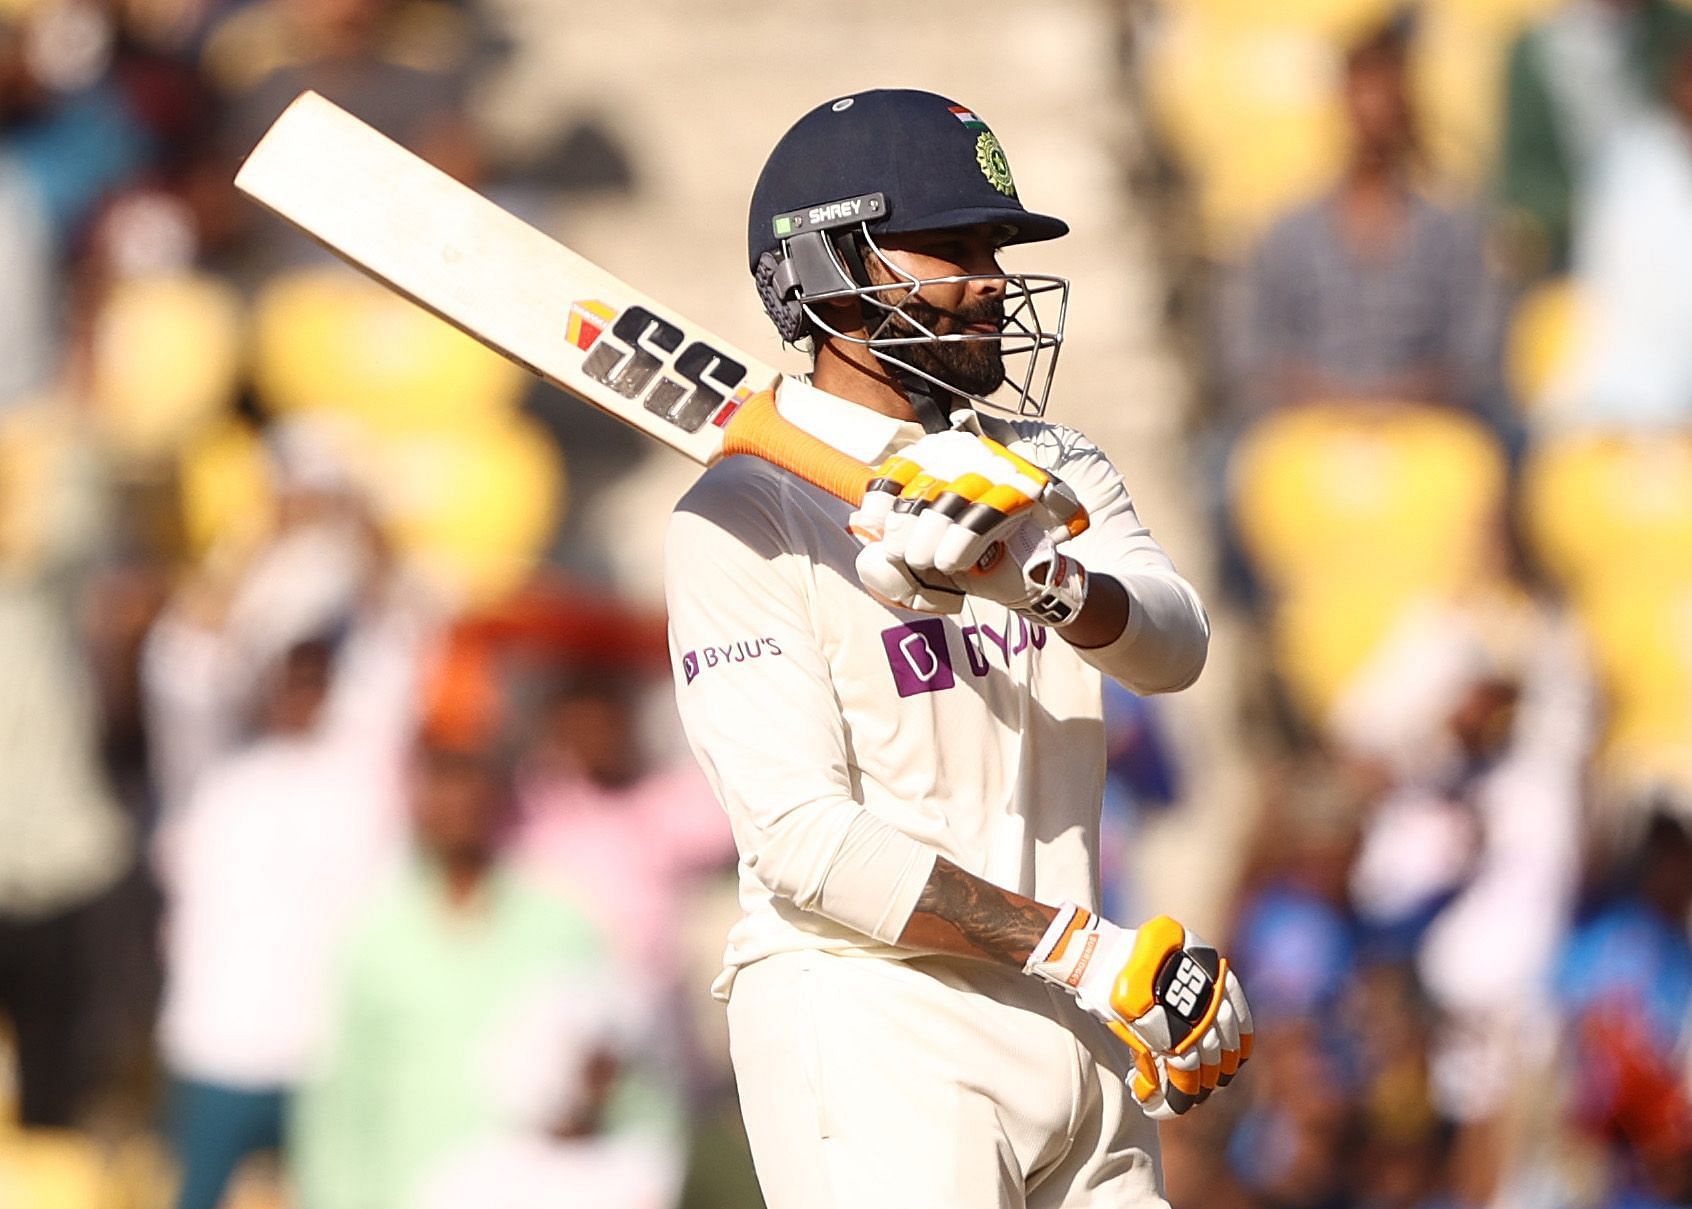 India v Australia - 1st Test: Day 2